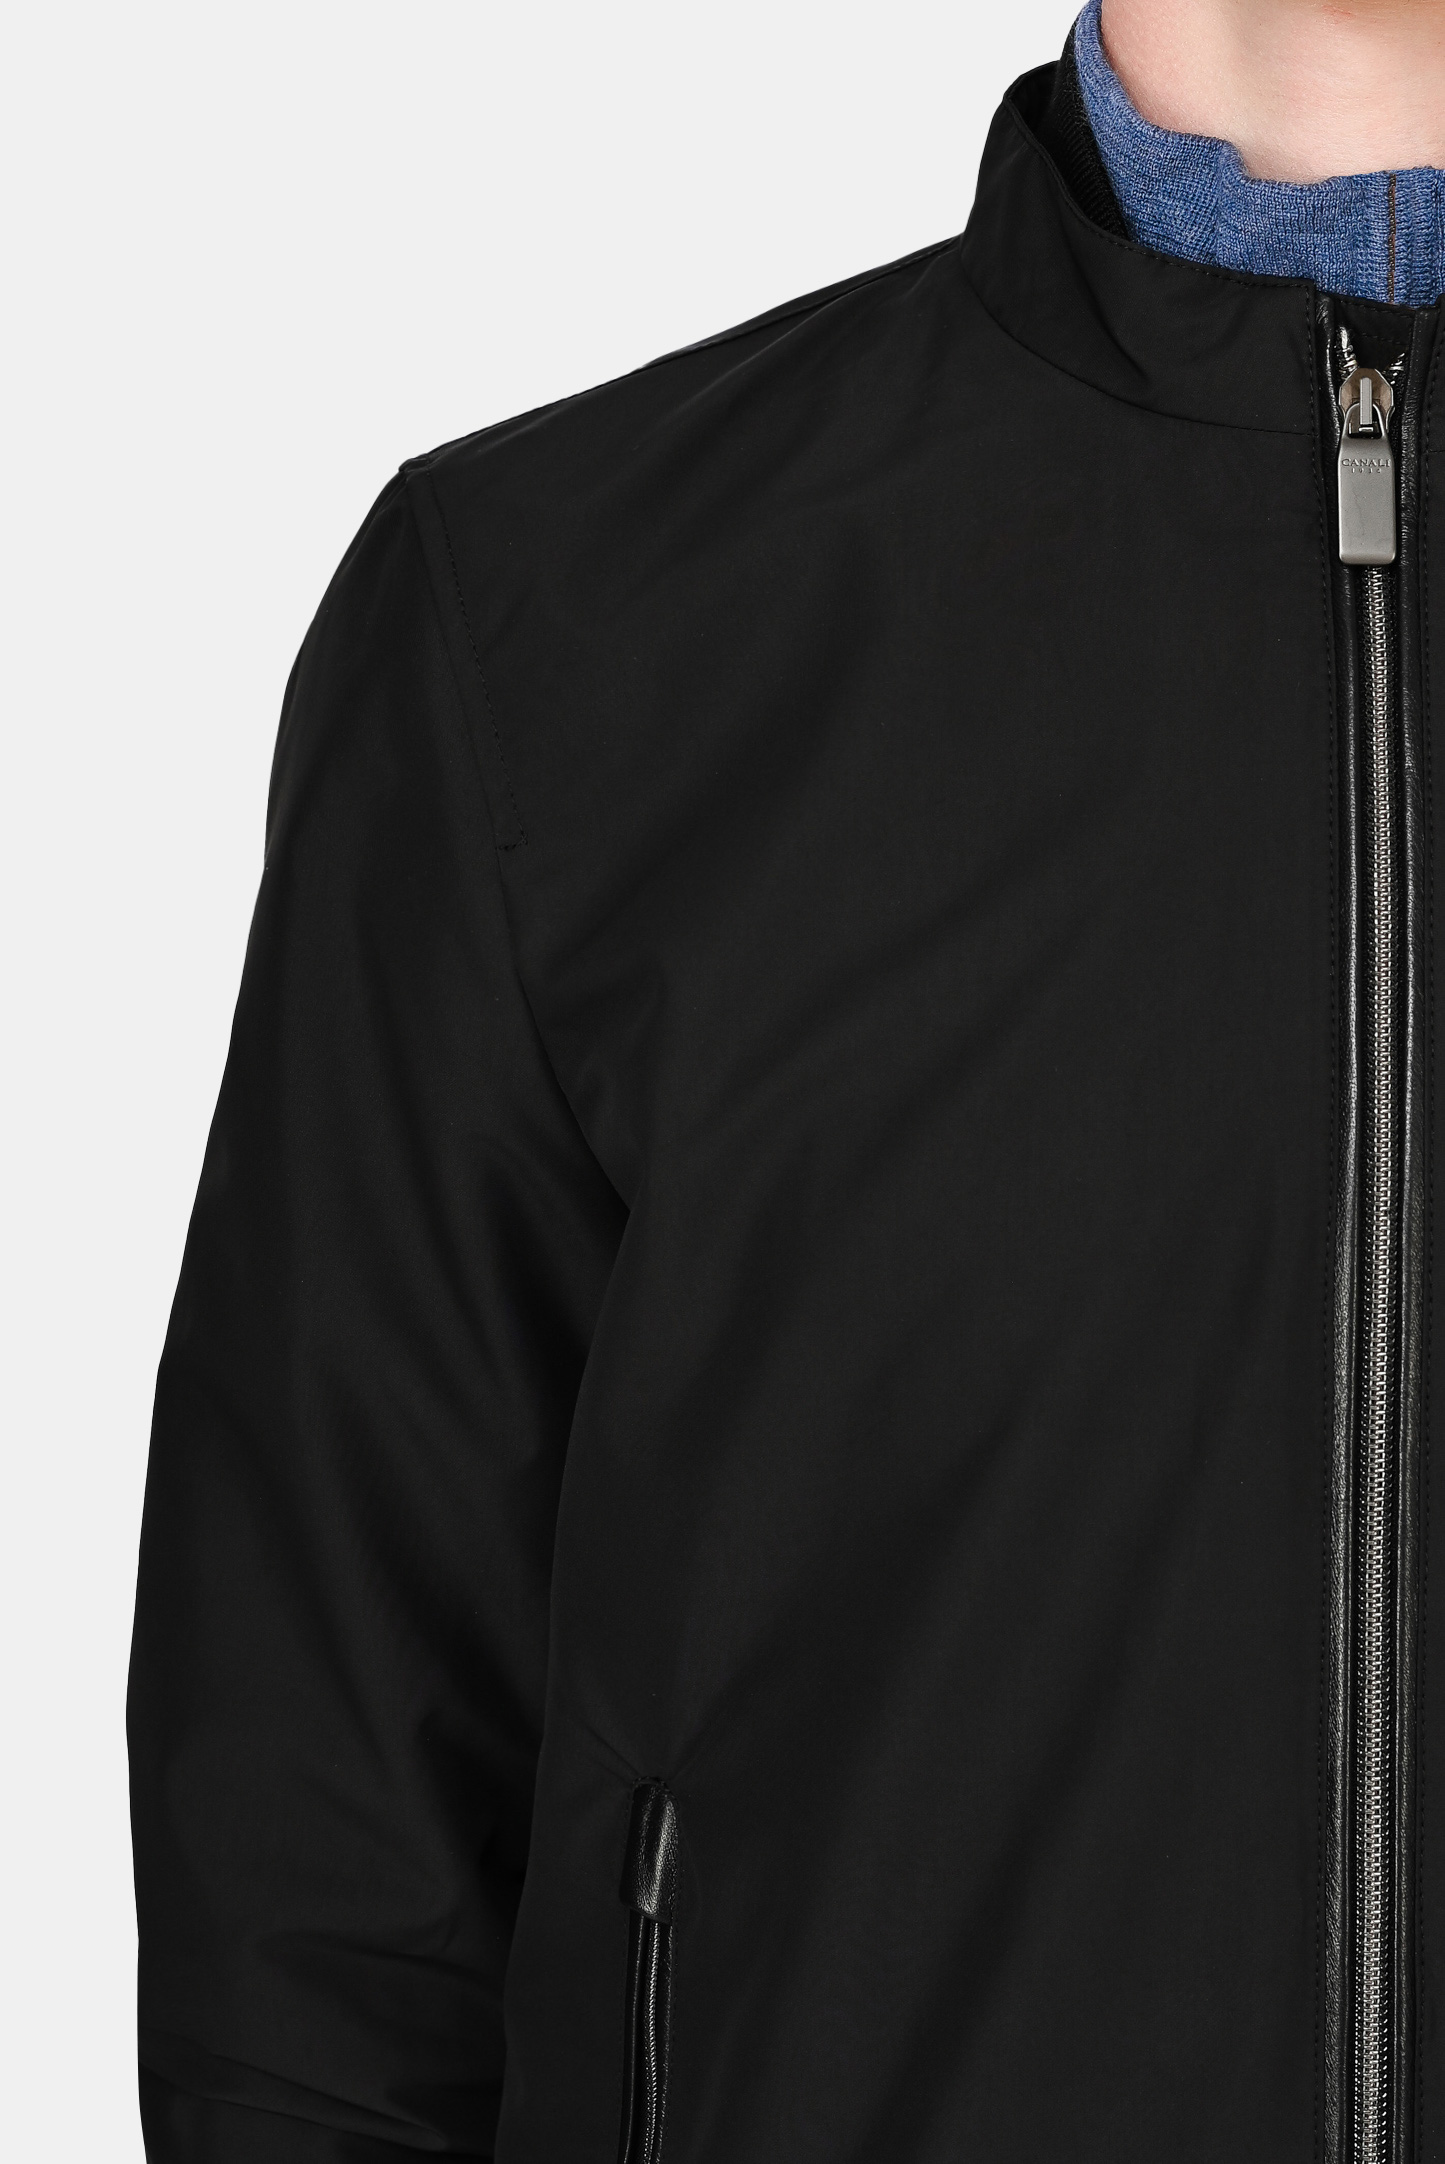 Куртка CANALI SG01404 O40672, цвет: Черный, Мужской